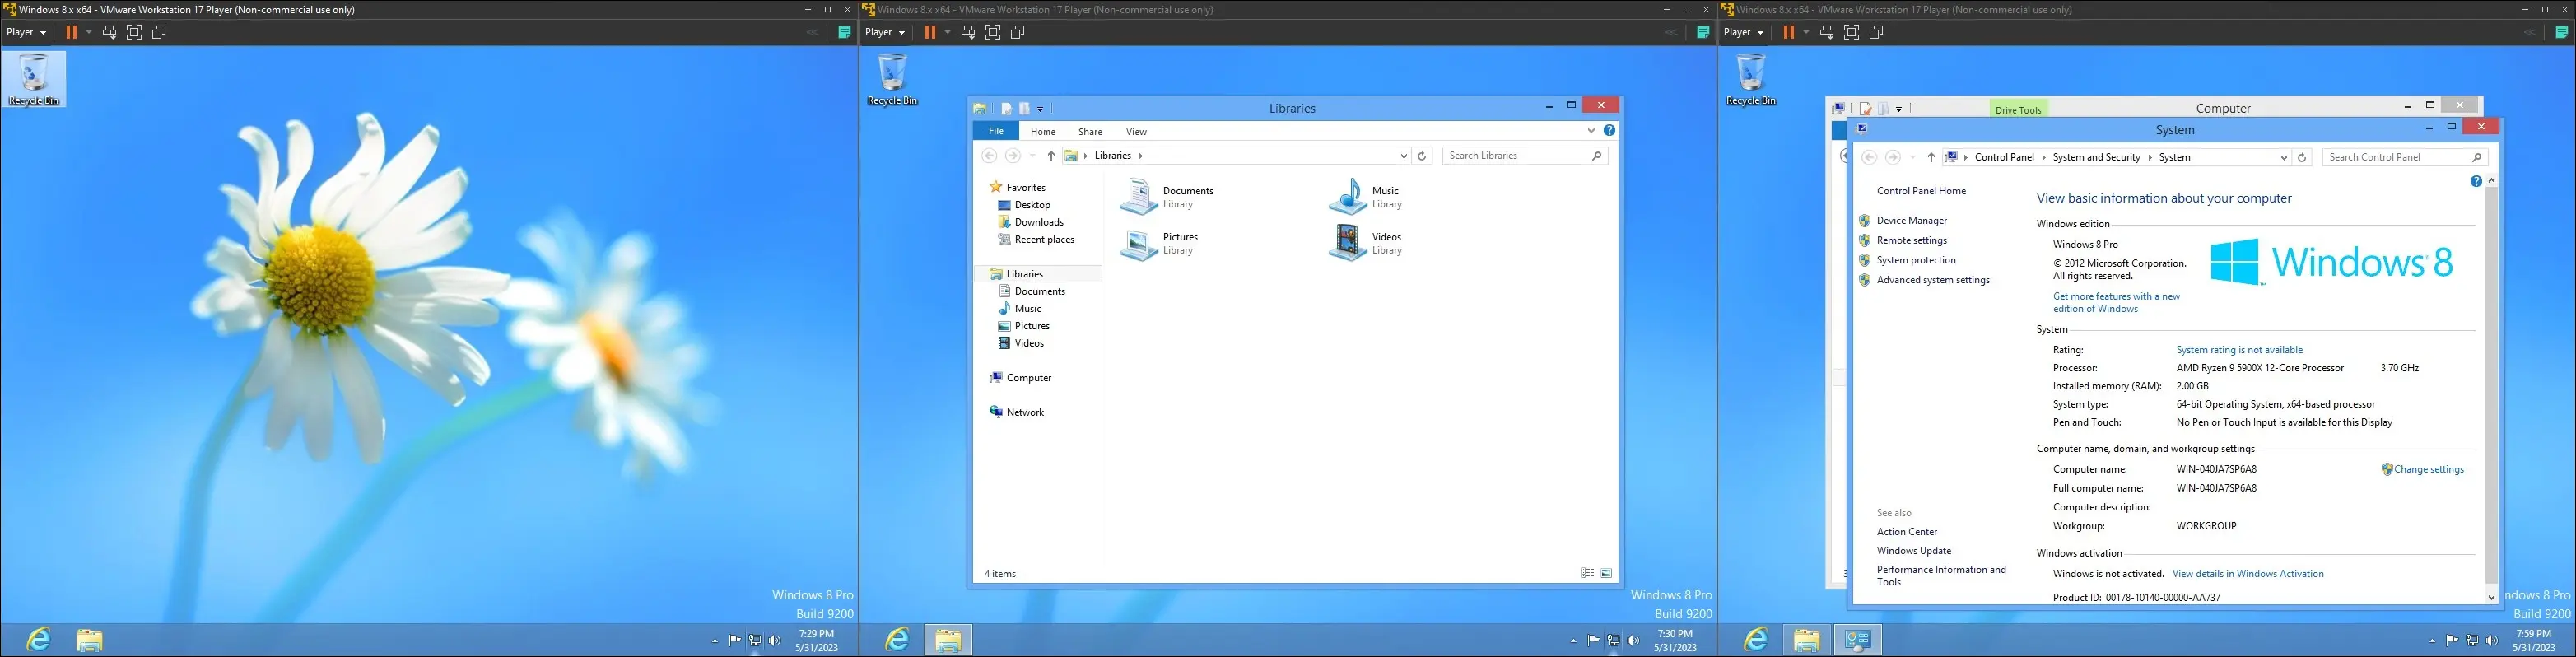 изображения Windows 8 на виртуальной машине, показывающие рабочий стол, интерфейс проводника и «Страницу о компьютере»